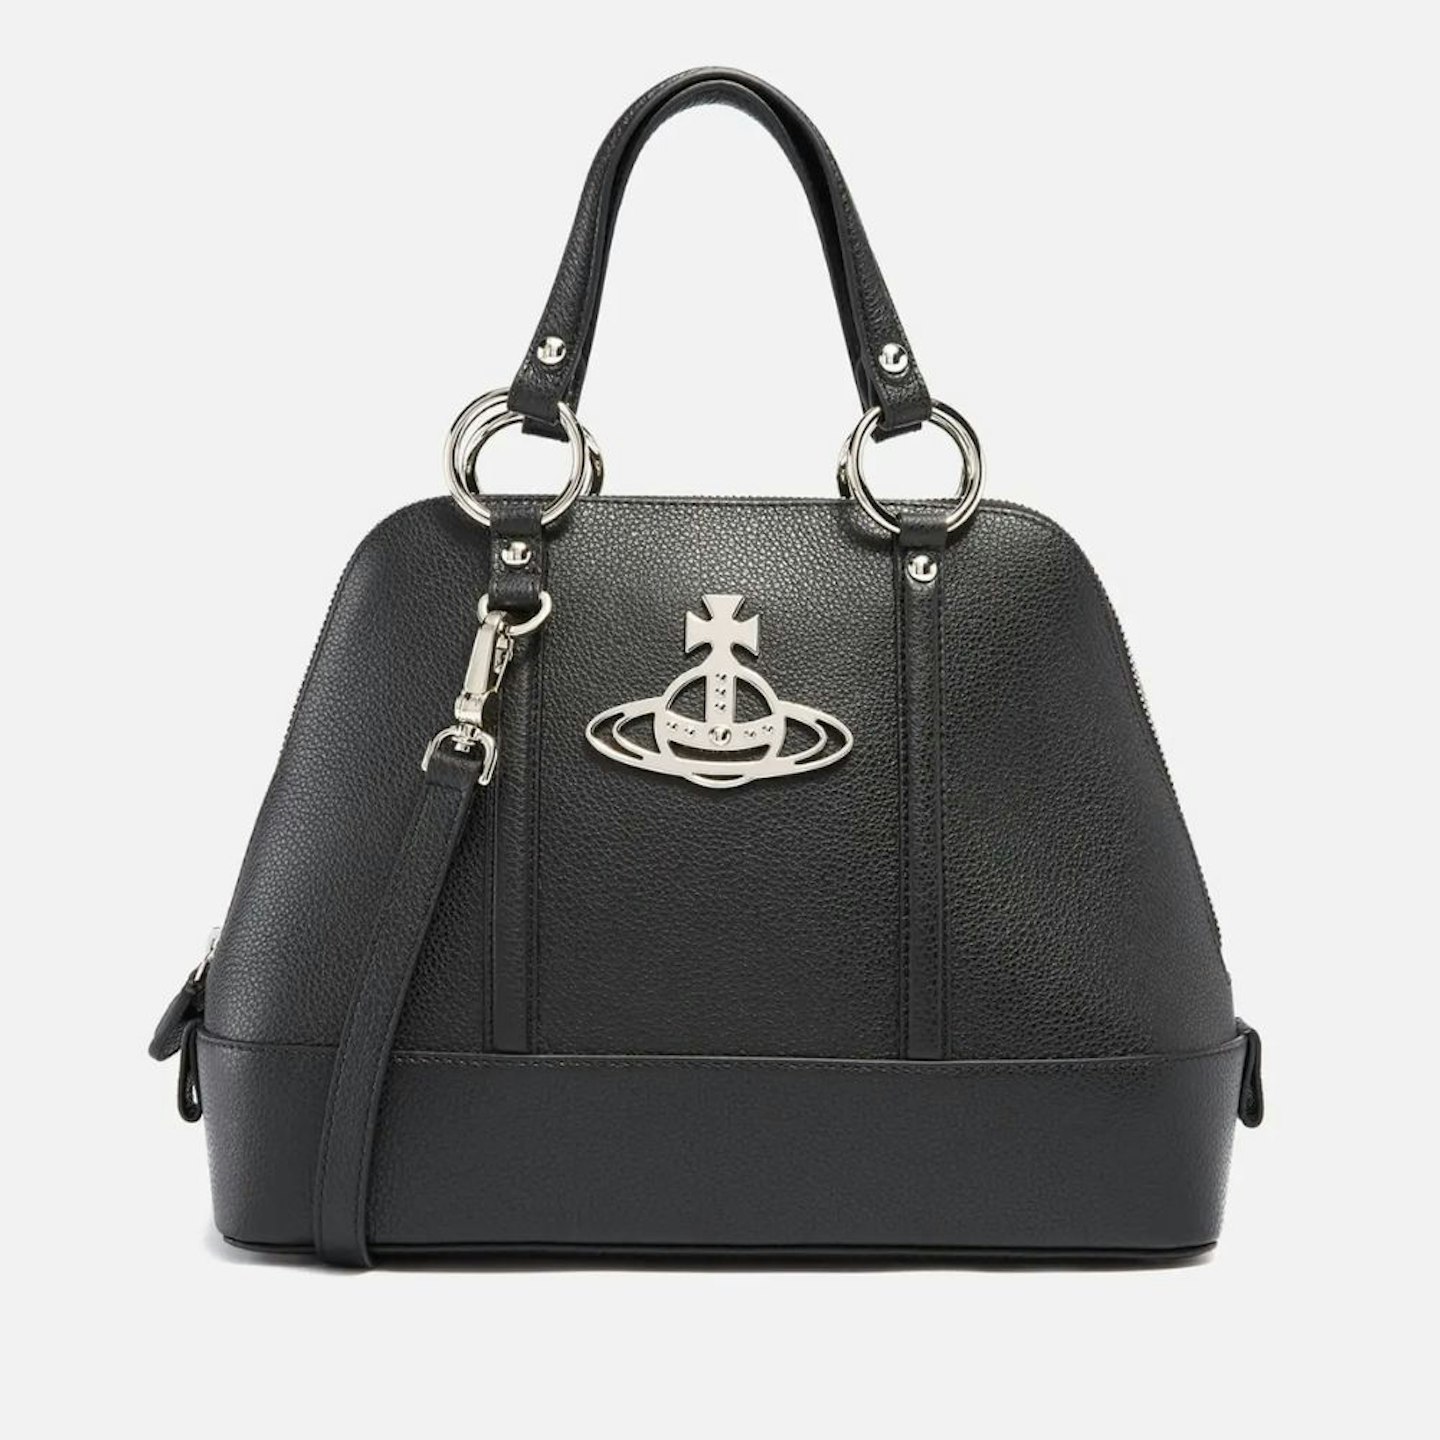 LC x Réu - Reuse Store - S$799🉐 saffinao messenger bag, size: 33/28/6cm,  retail 4K+, good condition